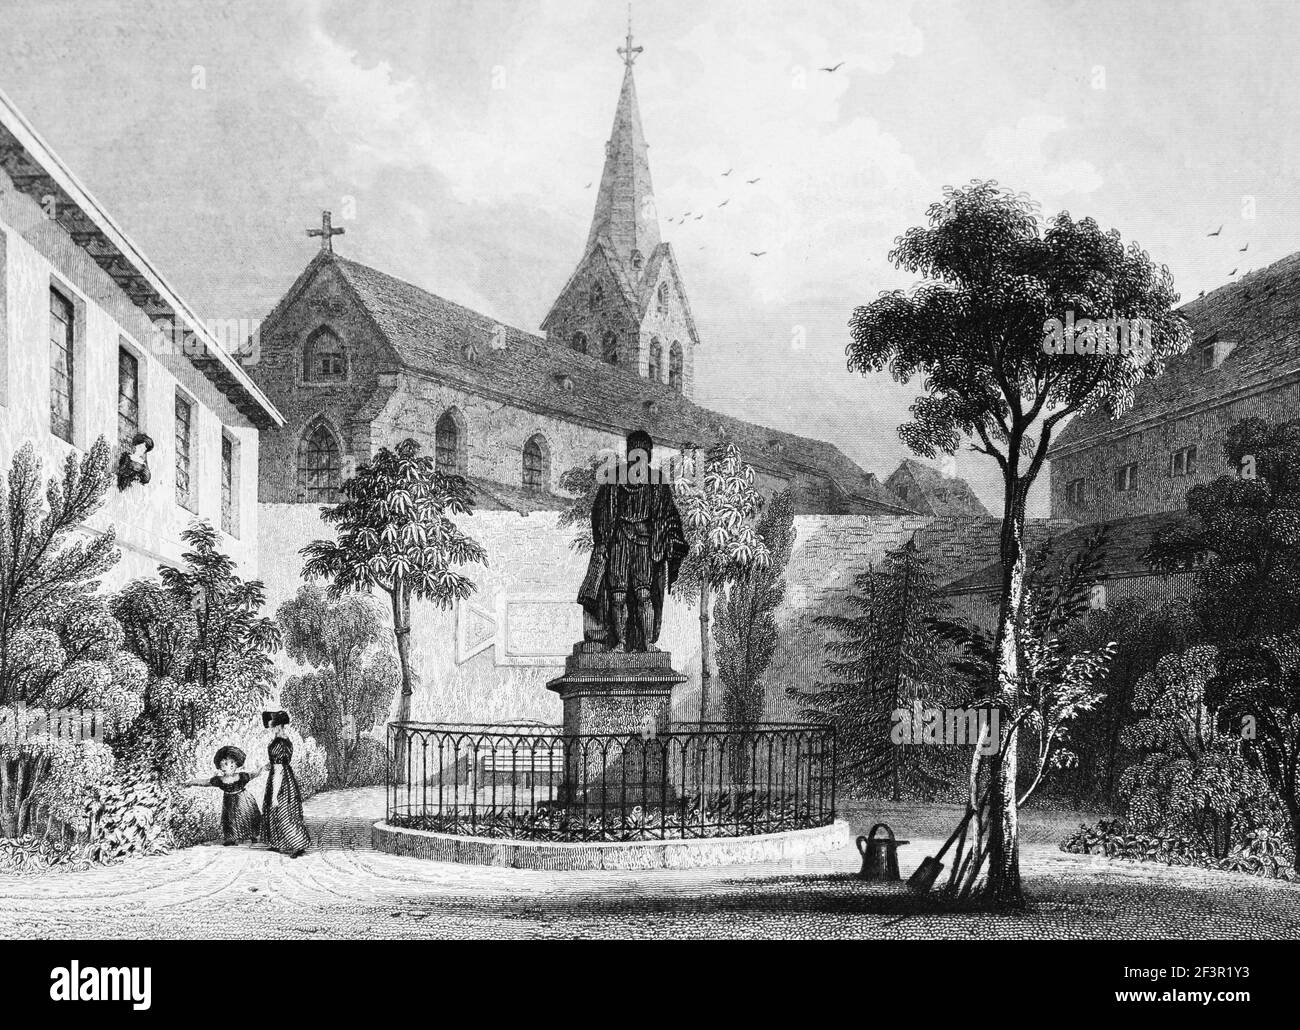 Denkmal von Johannes Gutenberg, Erfinder der Druckmaschine, Mayence, Rhein, Rheinland-Pfalz, Deutschland, Stahlstich von 1832 Stockfoto